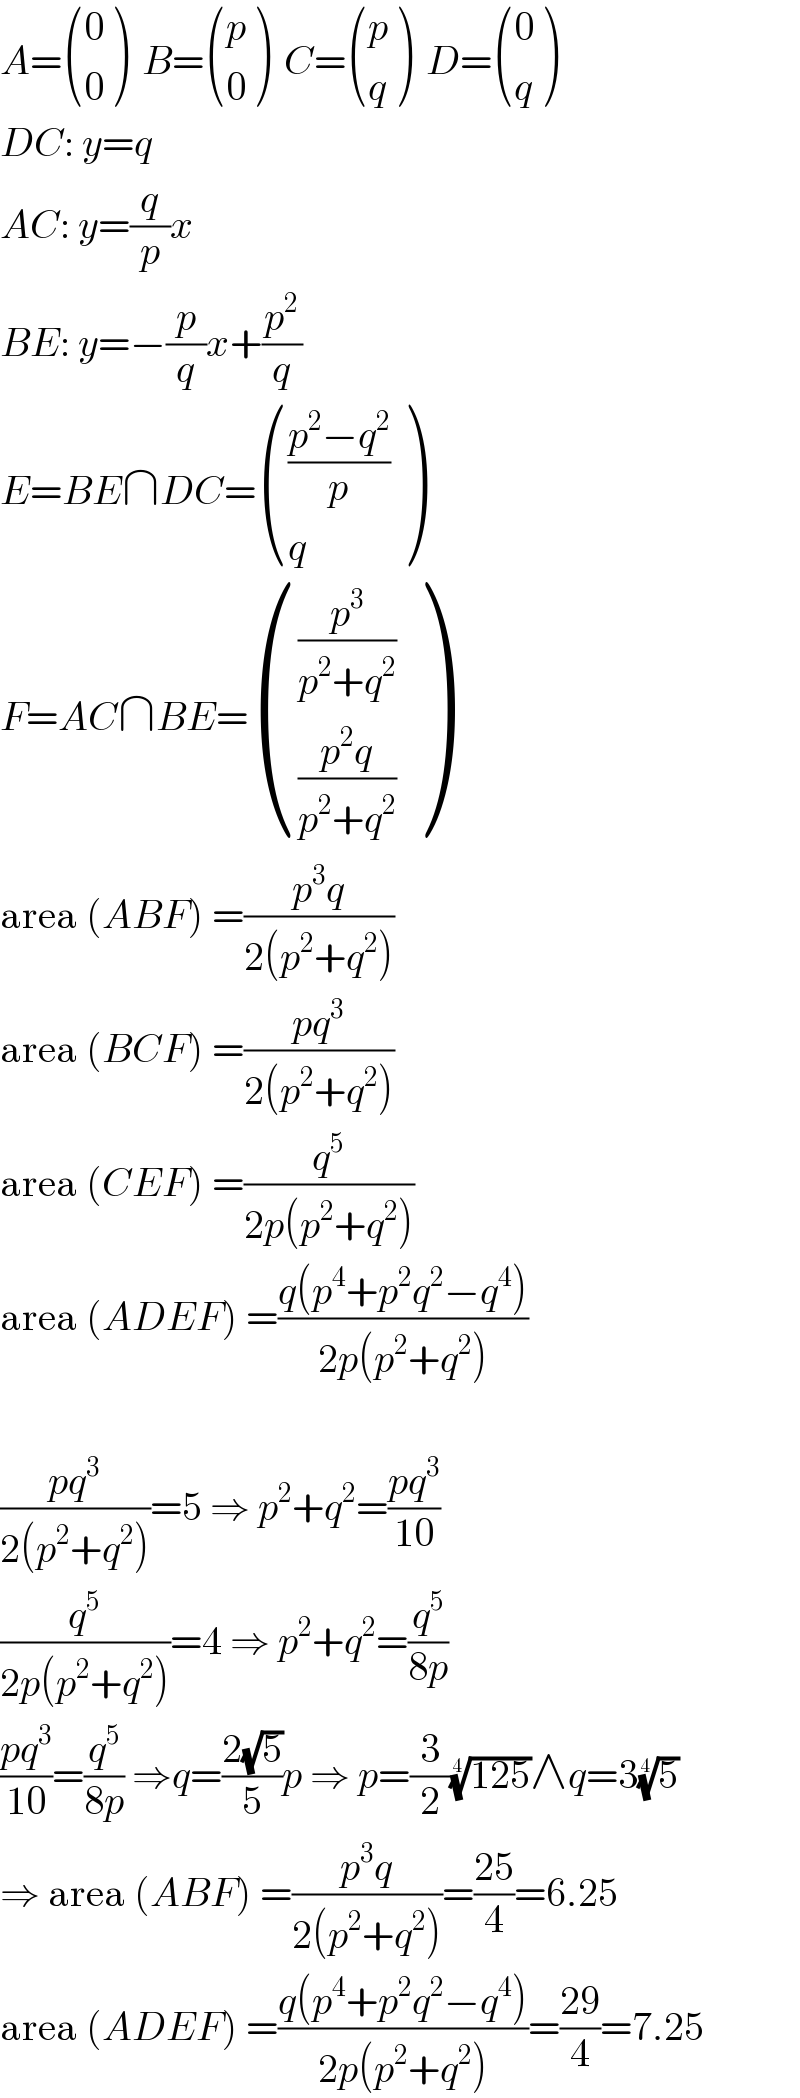 A= ((0),(0) )  B= ((p),(0) )  C= ((p),(q) )  D= ((0),(q) )  DC: y=q  AC: y=(q/p)x  BE: y=−(p/q)x+(p^2 /q)  E=BE∩DC= ((((p^2 −q^2 )/p)),(q) )  F=AC∩BE= (((p^3 /(p^2 +q^2 ))),(((p^2 q)/(p^2 +q^2 ))) )  area (ABF) =((p^3 q)/(2(p^2 +q^2 )))  area (BCF) =((pq^3 )/(2(p^2 +q^2 )))  area (CEF) =(q^5 /(2p(p^2 +q^2 )))  area (ADEF) =((q(p^4 +p^2 q^2 −q^4 ))/(2p(p^2 +q^2 )))    ((pq^3 )/(2(p^2 +q^2 )))=5 ⇒ p^2 +q^2 =((pq^3 )/(10))  (q^5 /(2p(p^2 +q^2 )))=4 ⇒ p^2 +q^2 =(q^5 /(8p))  ((pq^3 )/(10))=(q^5 /(8p)) ⇒q=((2(√5))/5)p ⇒ p=(3/2)((125))^(1/4) ∧q=3(5)^(1/4)   ⇒ area (ABF) =((p^3 q)/(2(p^2 +q^2 )))=((25)/4)=6.25  area (ADEF) =((q(p^4 +p^2 q^2 −q^4 ))/(2p(p^2 +q^2 )))=((29)/4)=7.25  